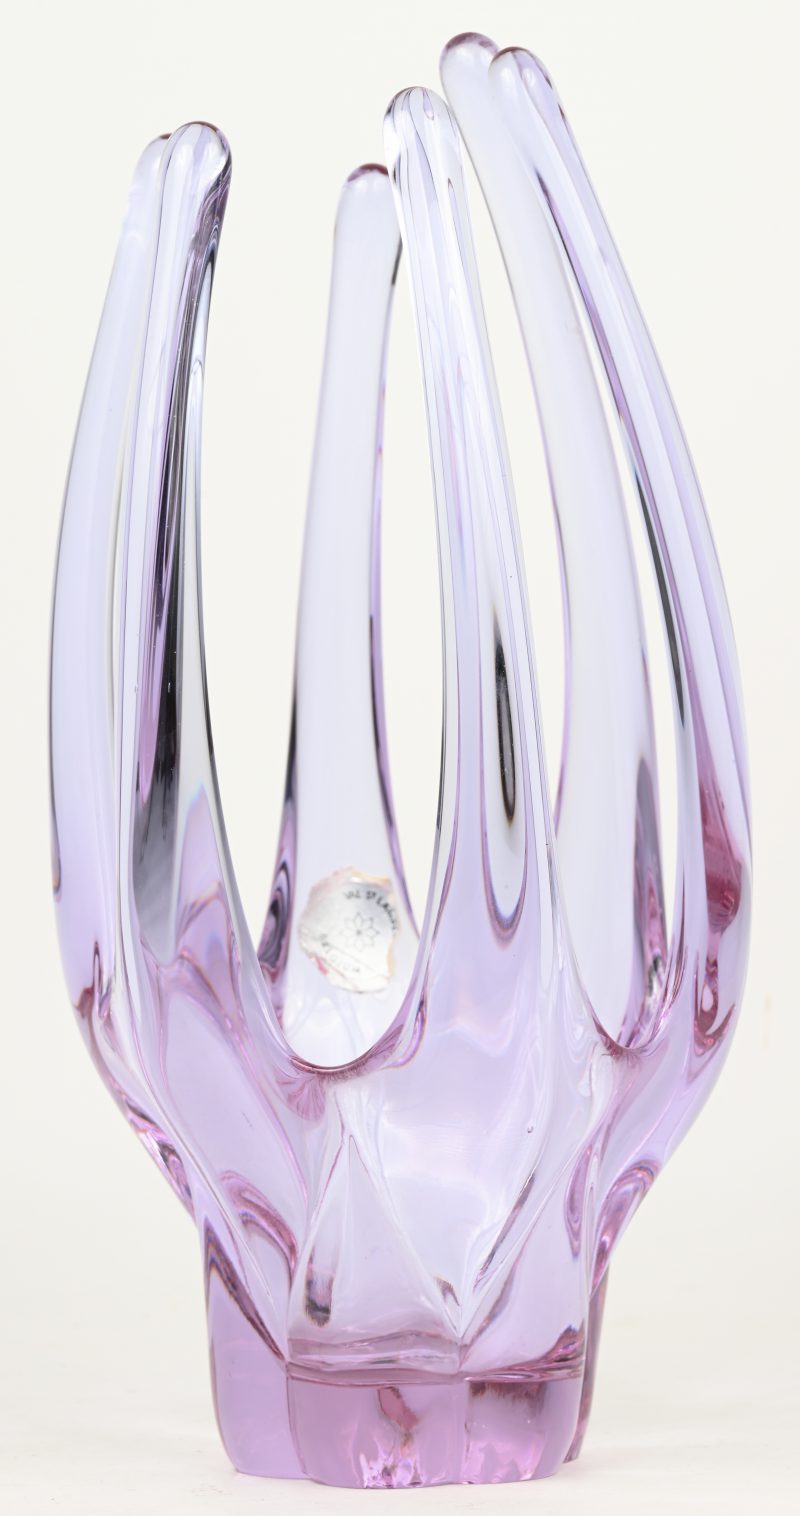 Een gegoten kristallen vaas met 6 armen, paars in de massa.